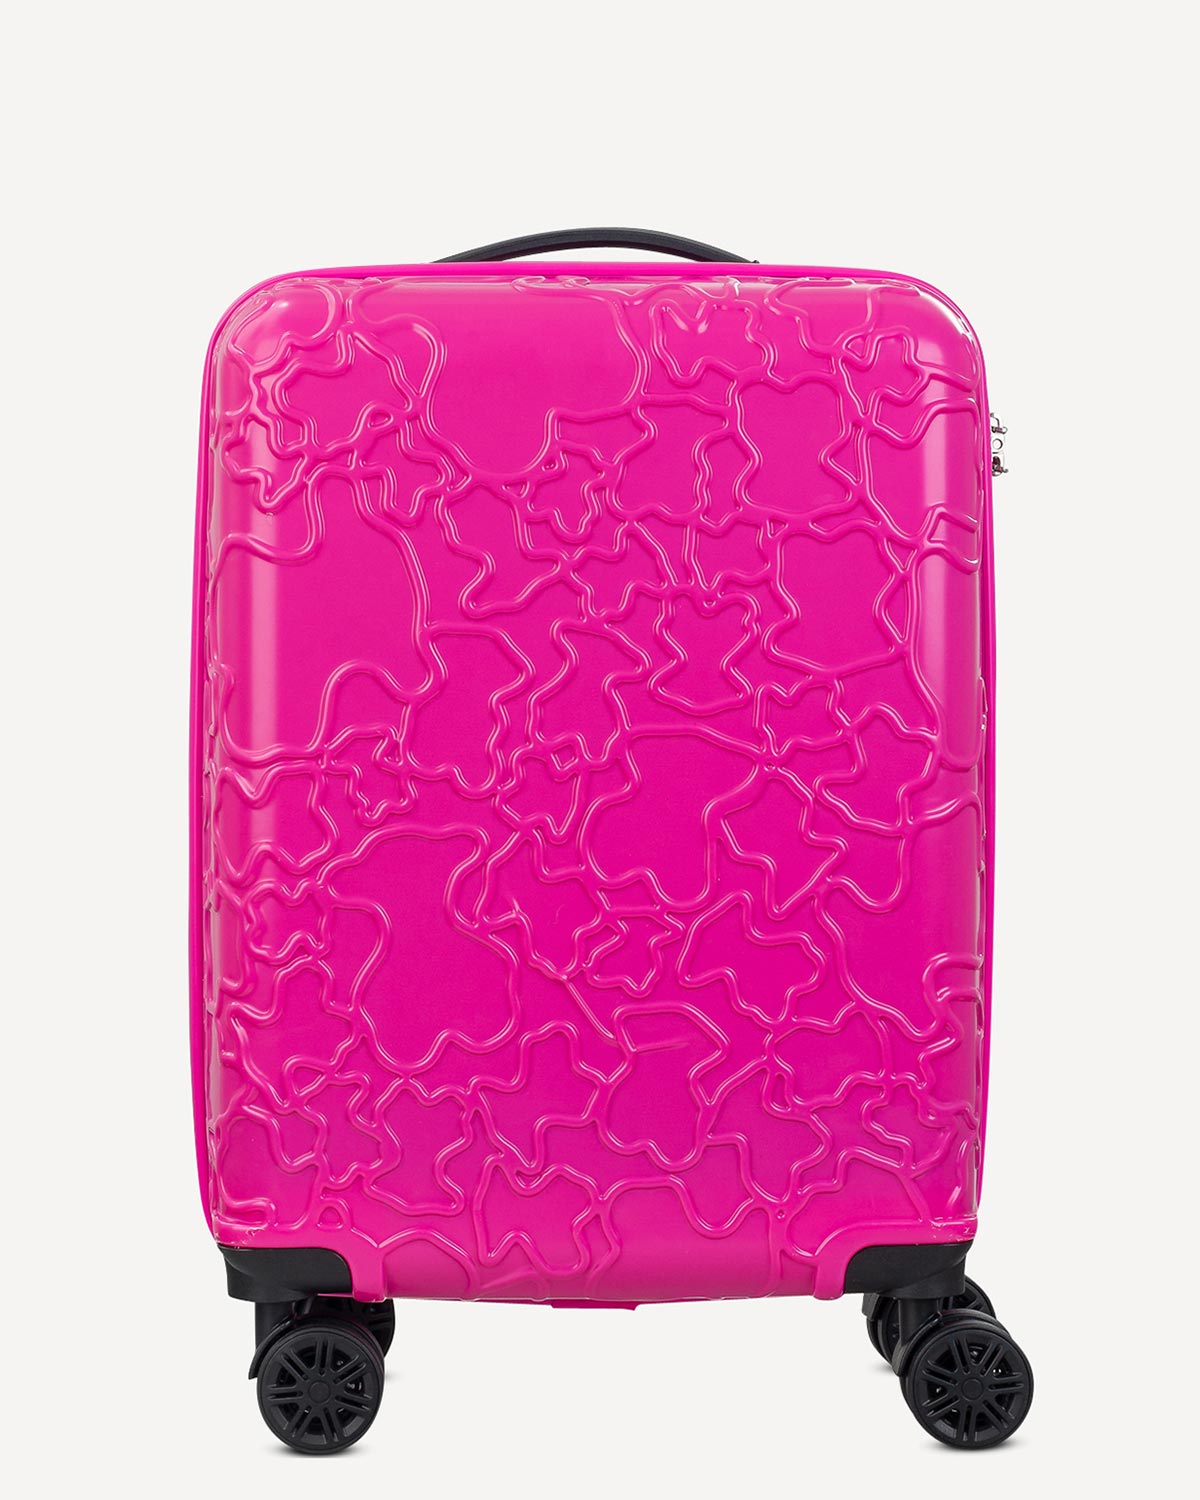 Γυναίκα - Travel Luggage - Tous Φούξια